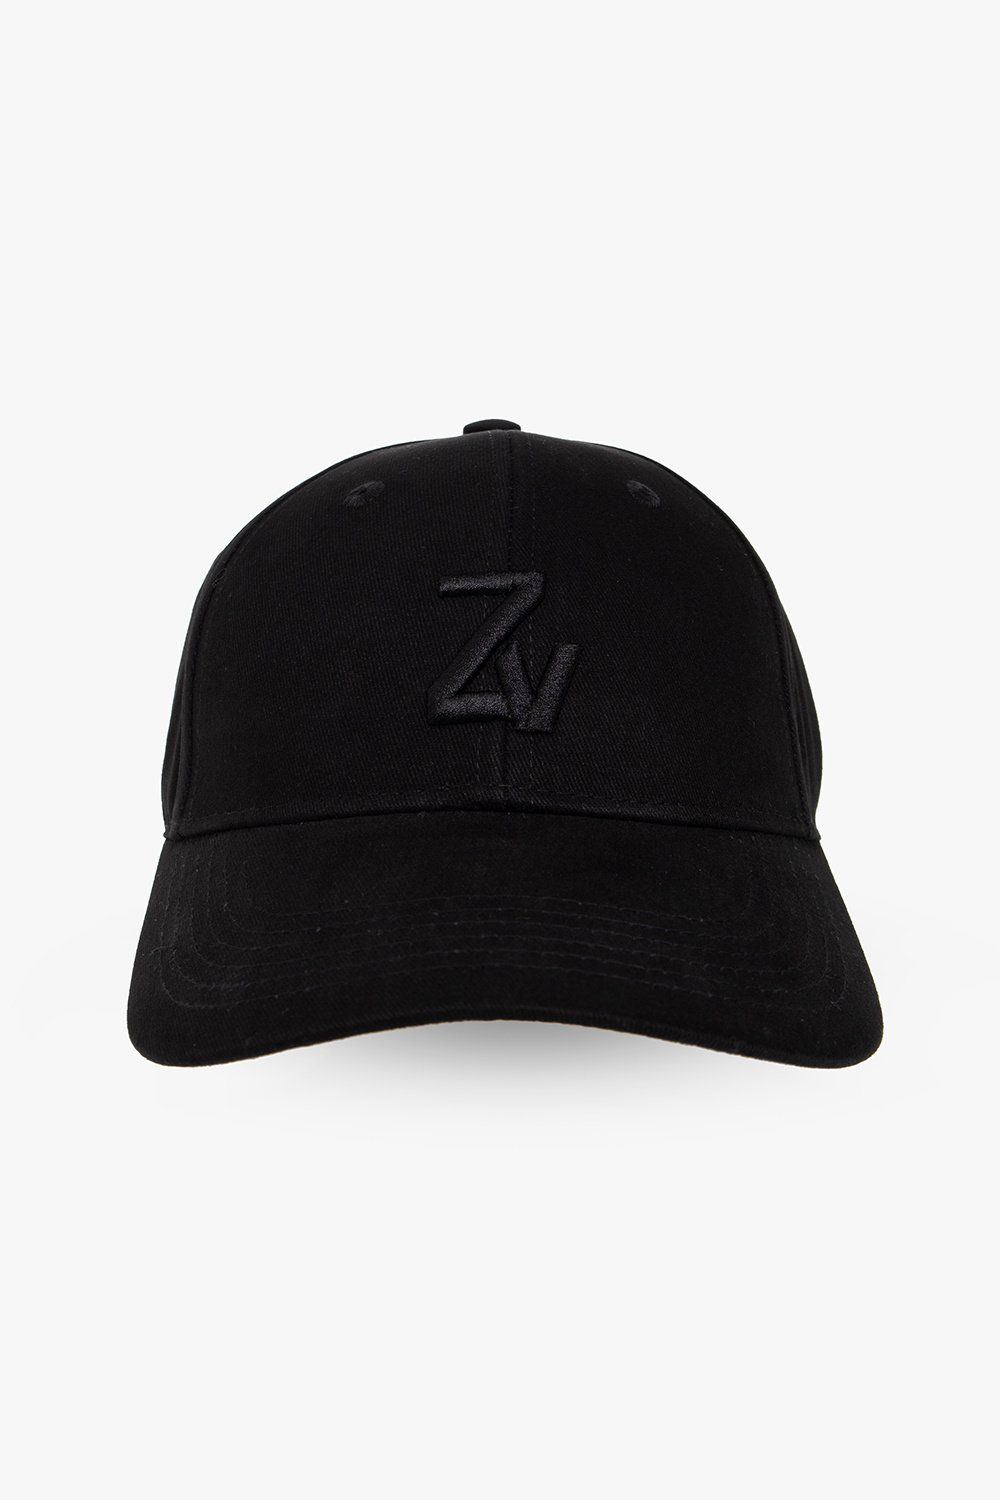 Zadig & Voltaire 'Klelia' baseball cap | Men's Accessories | Vitkac